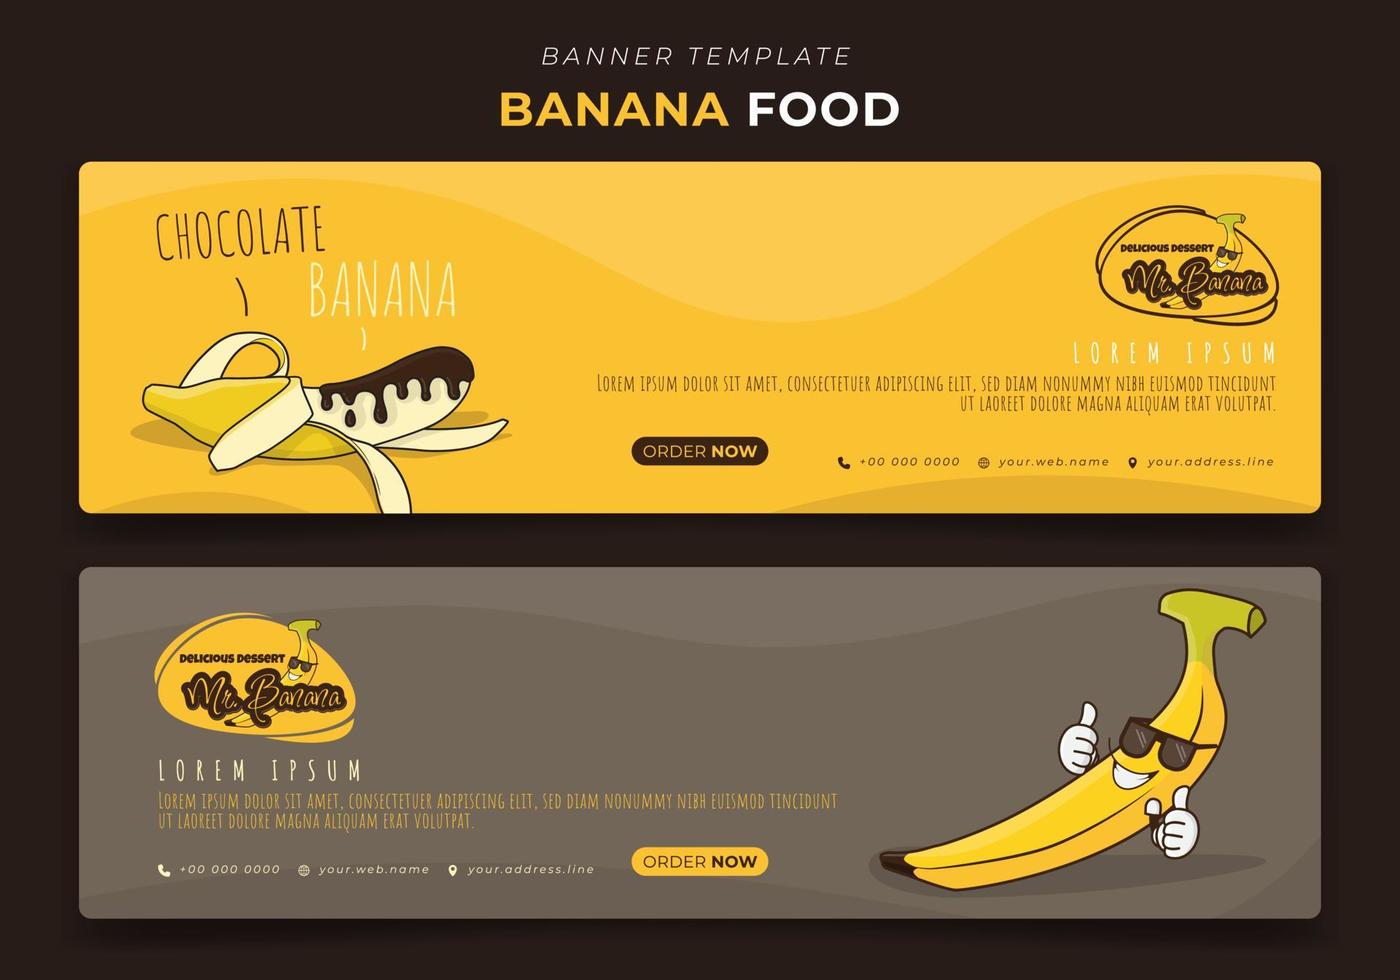 Banner-Vorlage im Landschaftsdesign mit Cartoon-Bananen-Design für Bananen-Werbedesign vektor